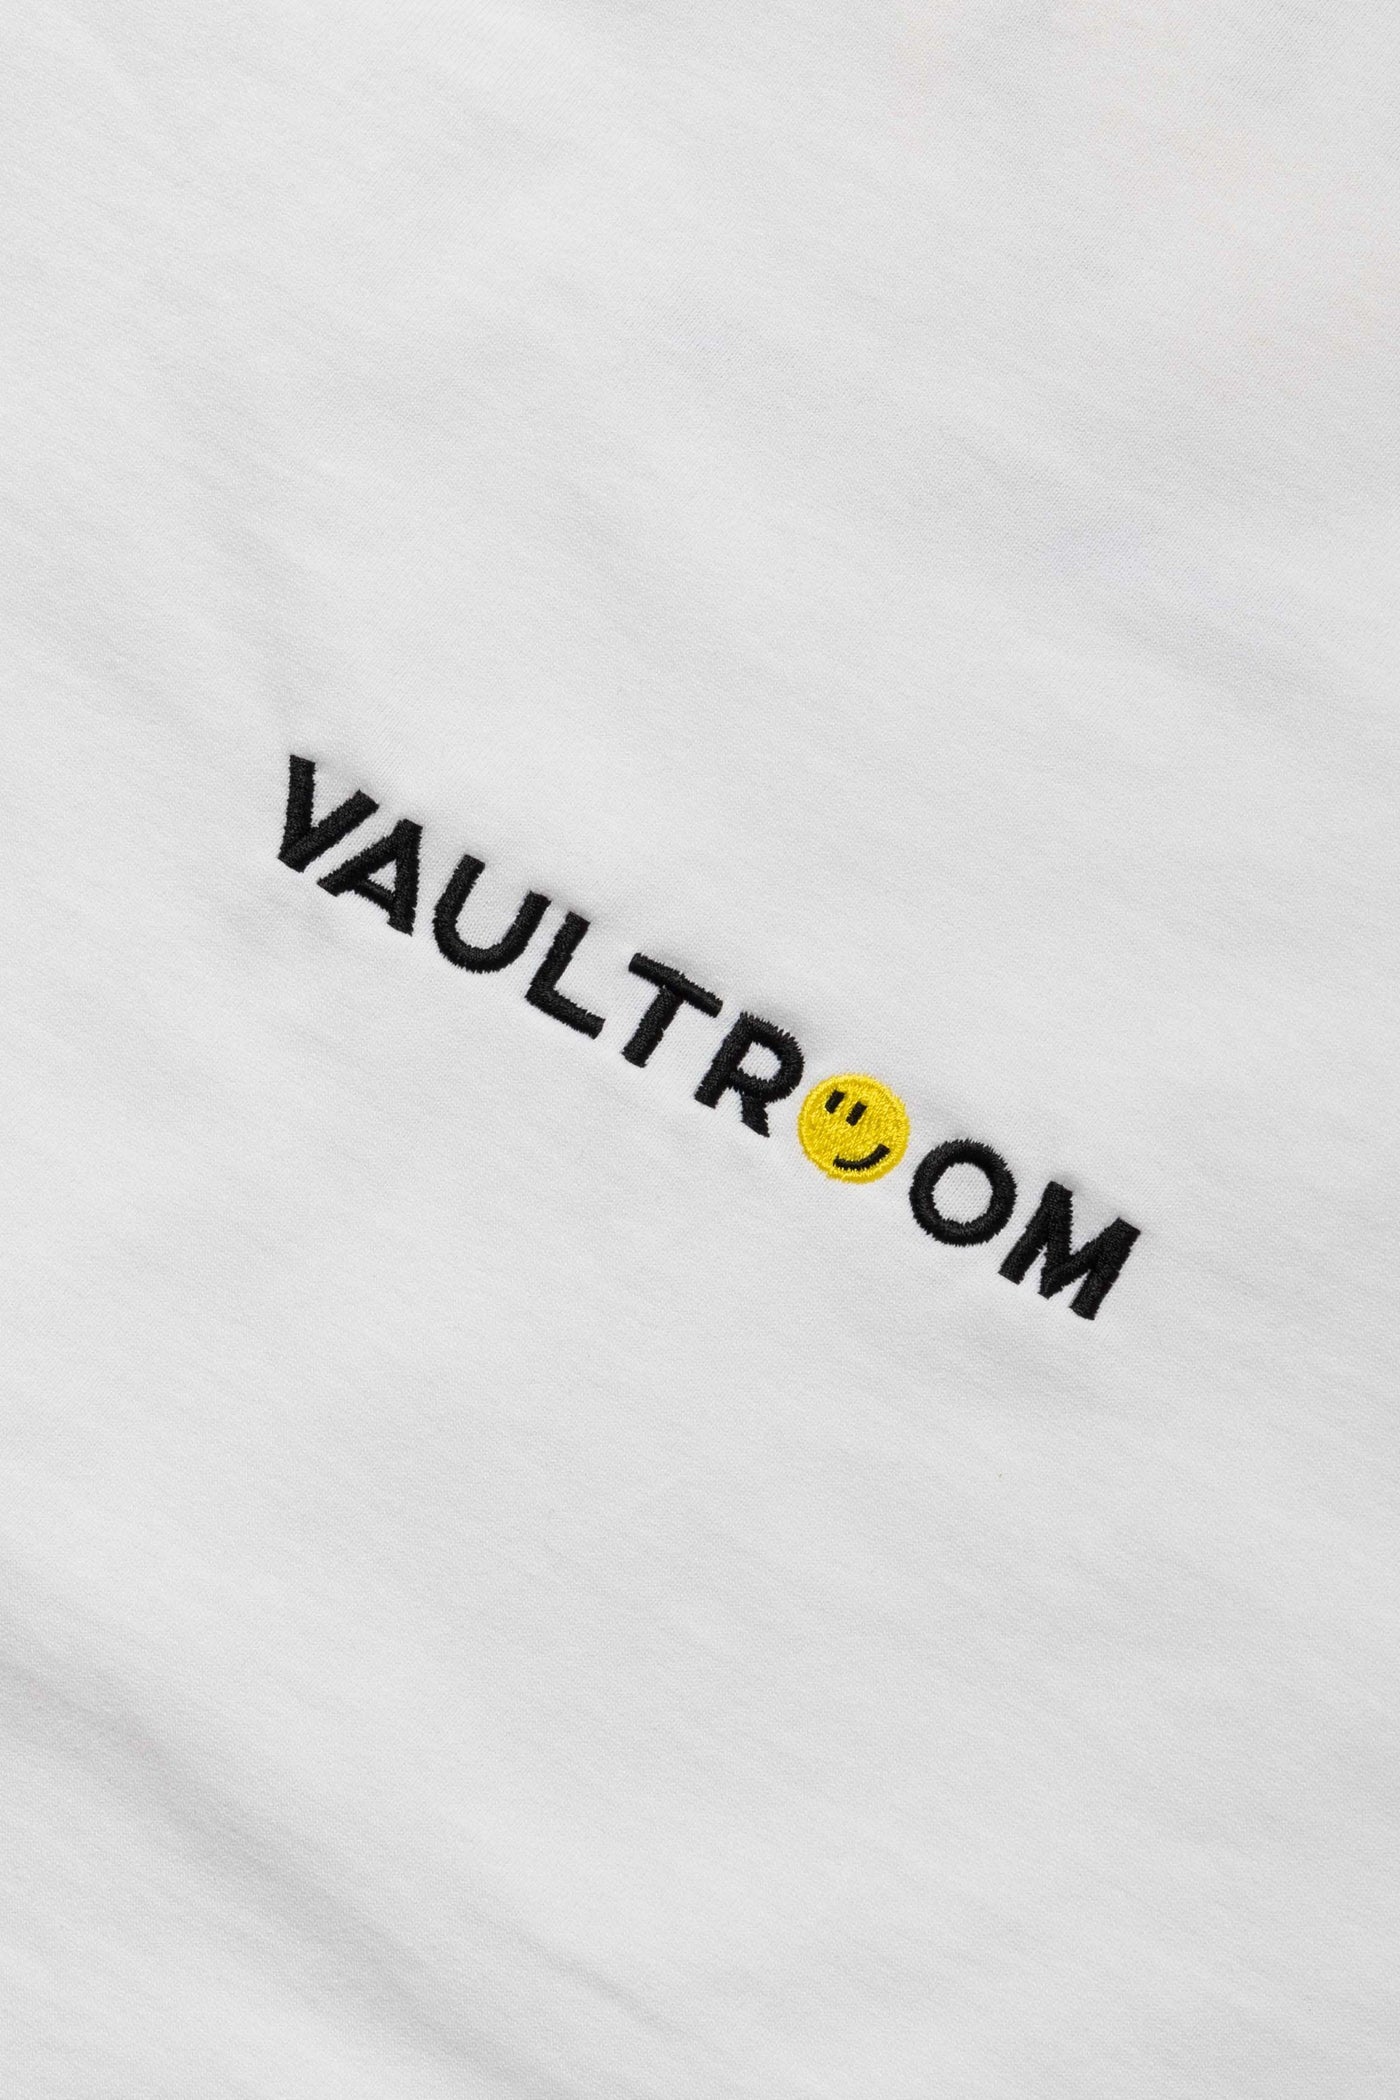 vaultroom 